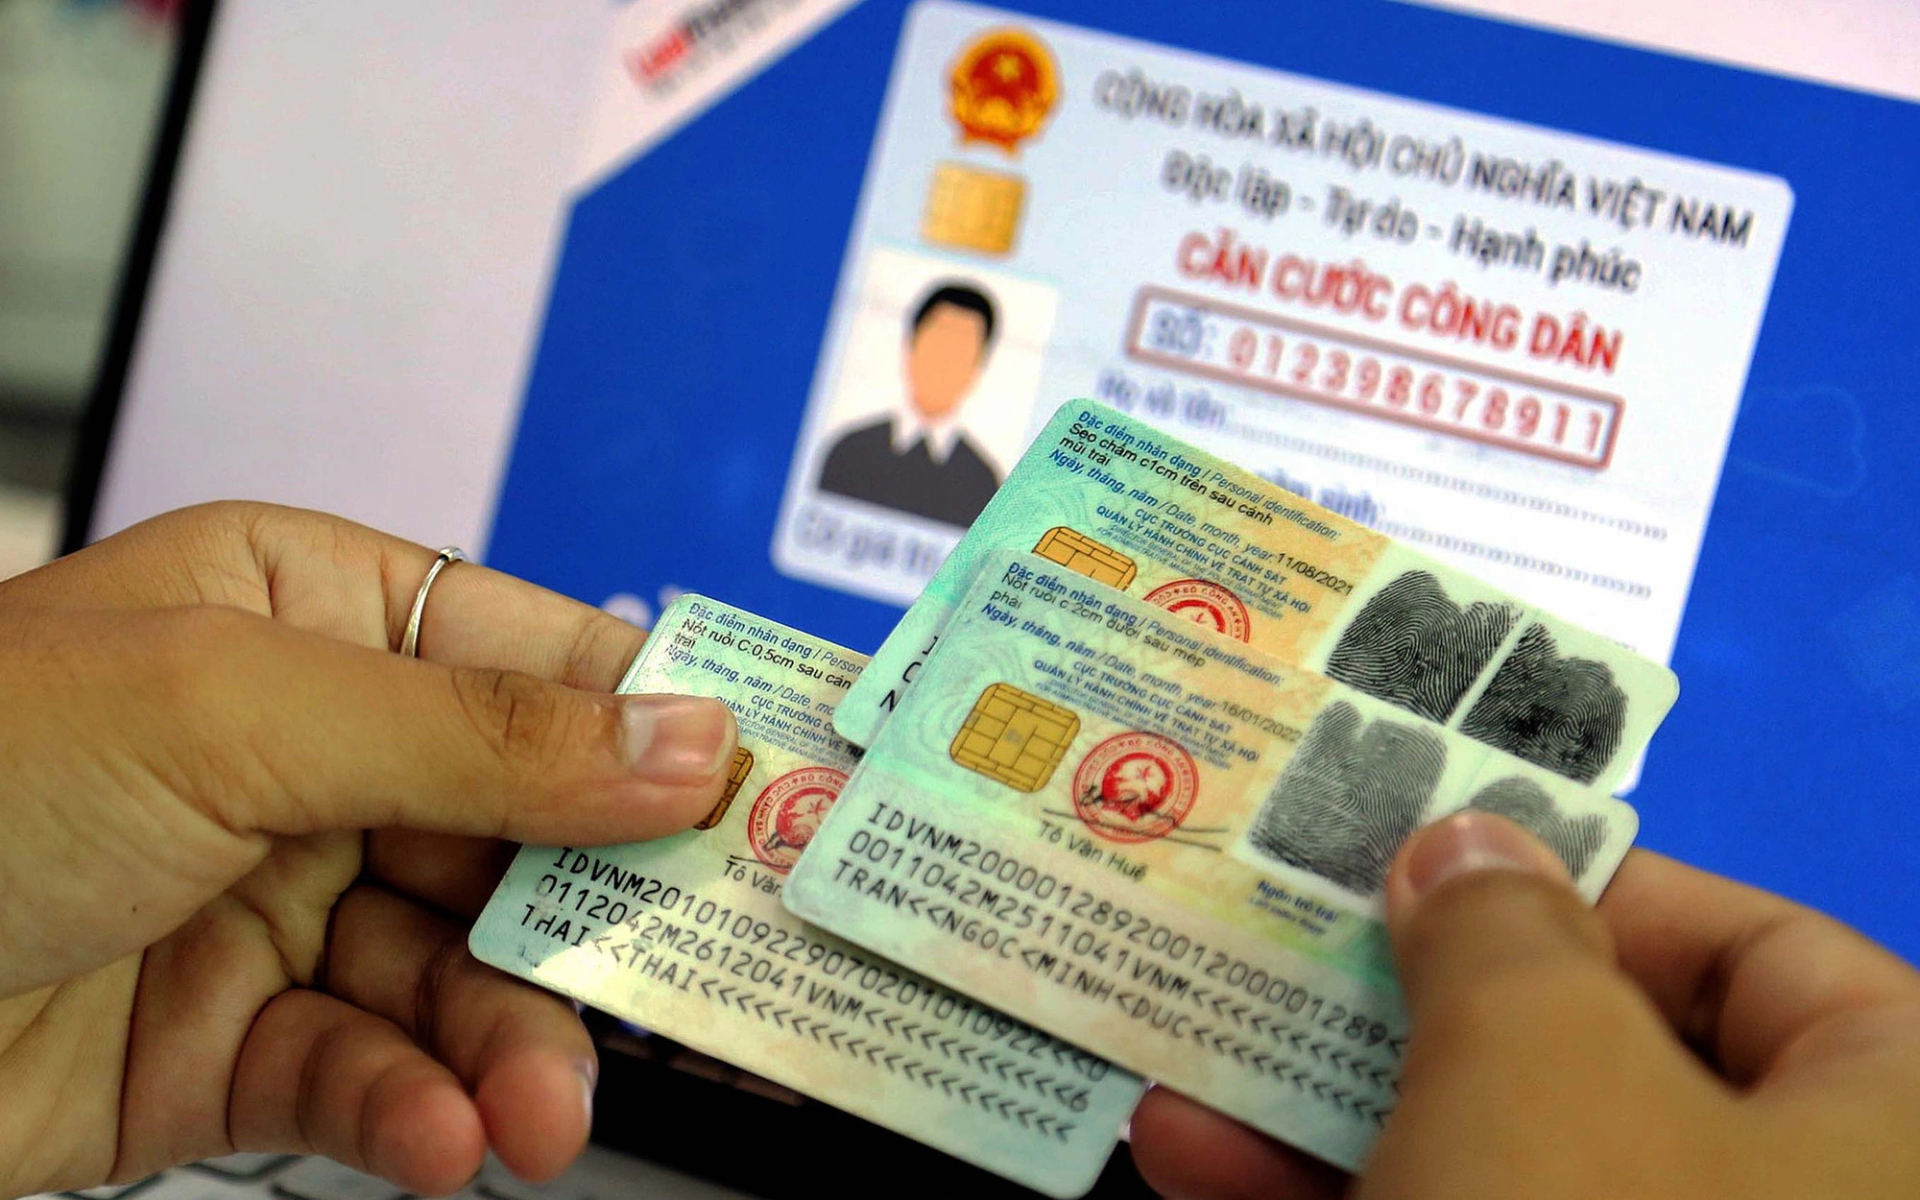 Căn cước công dân là giấy tờ tùy thân quan trọng của mỗi người dân Việt Nam